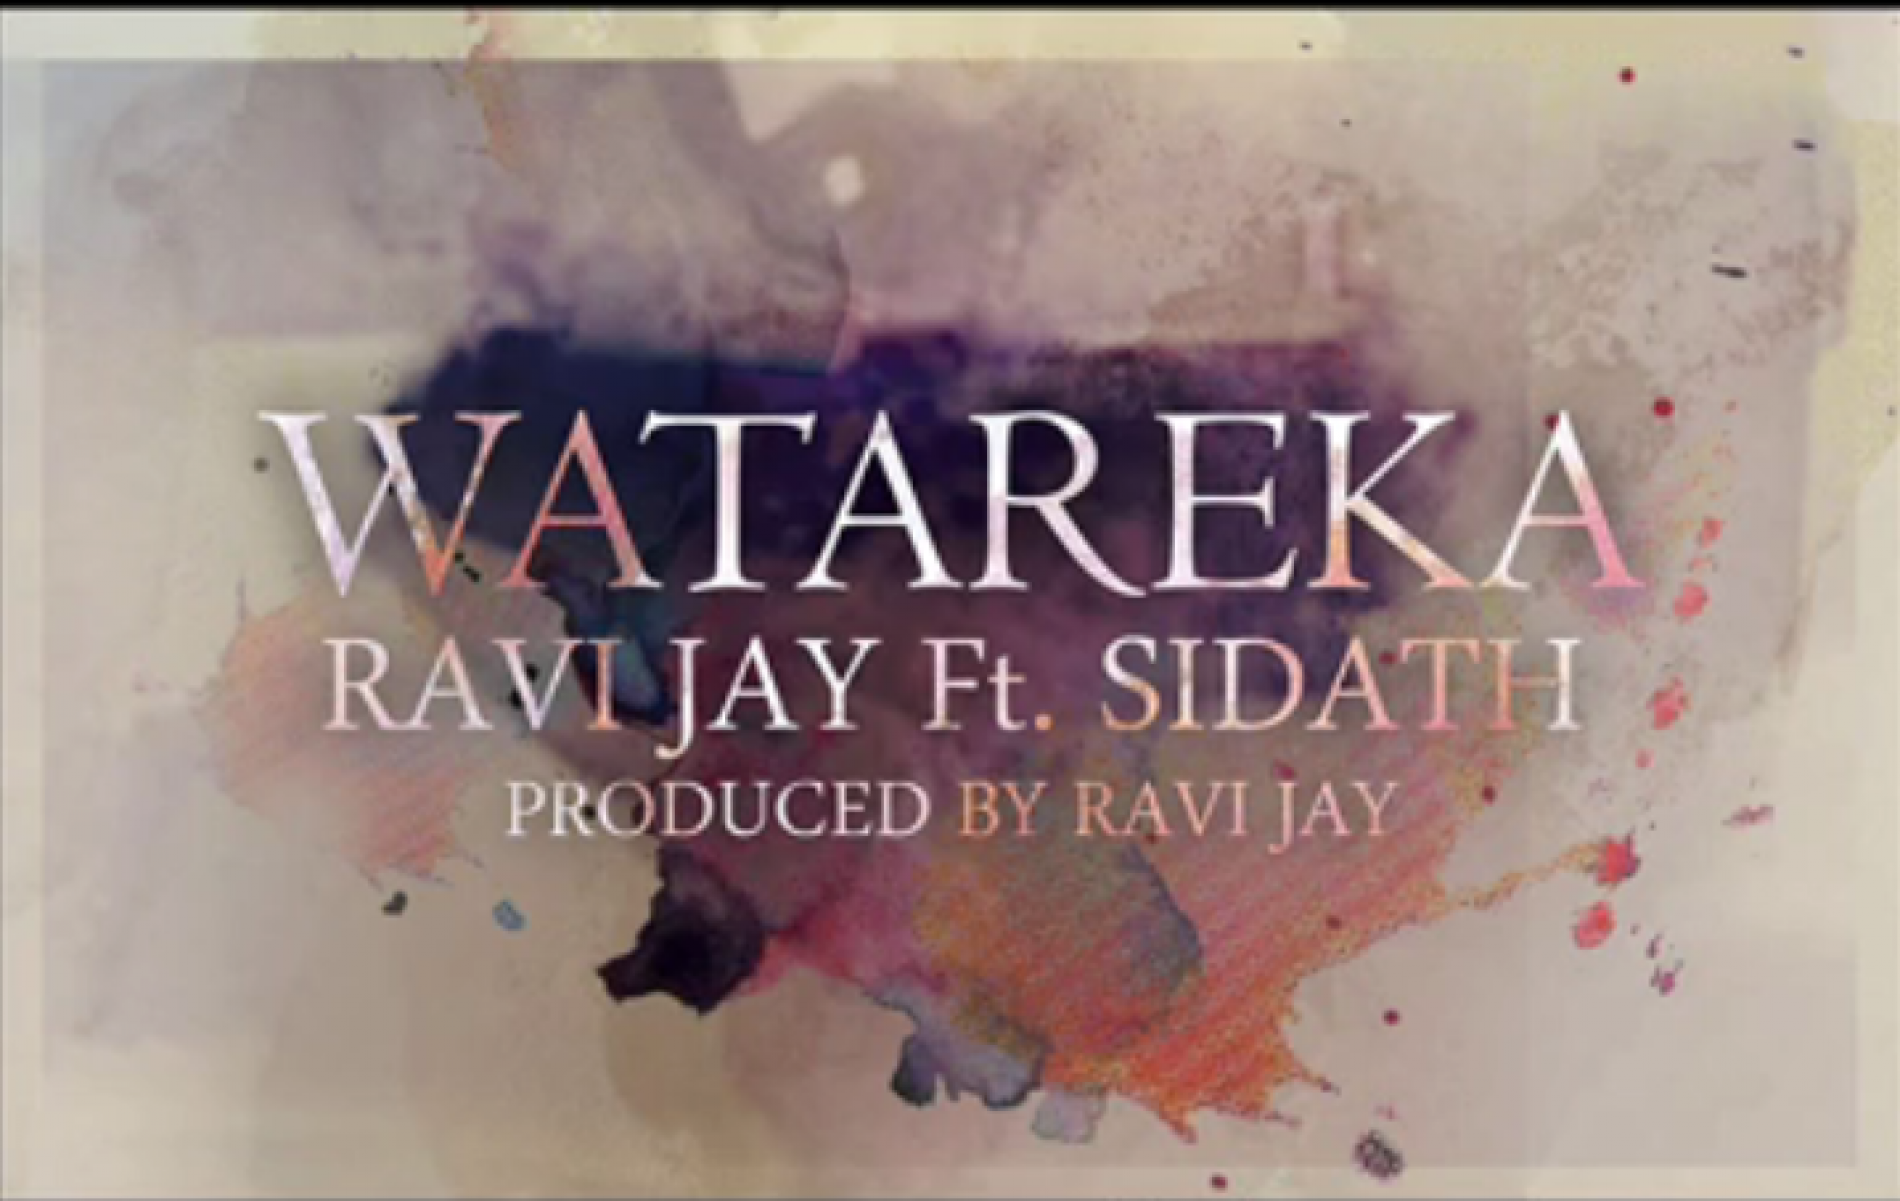 Ravi Jay Ft Sidath: Watareka